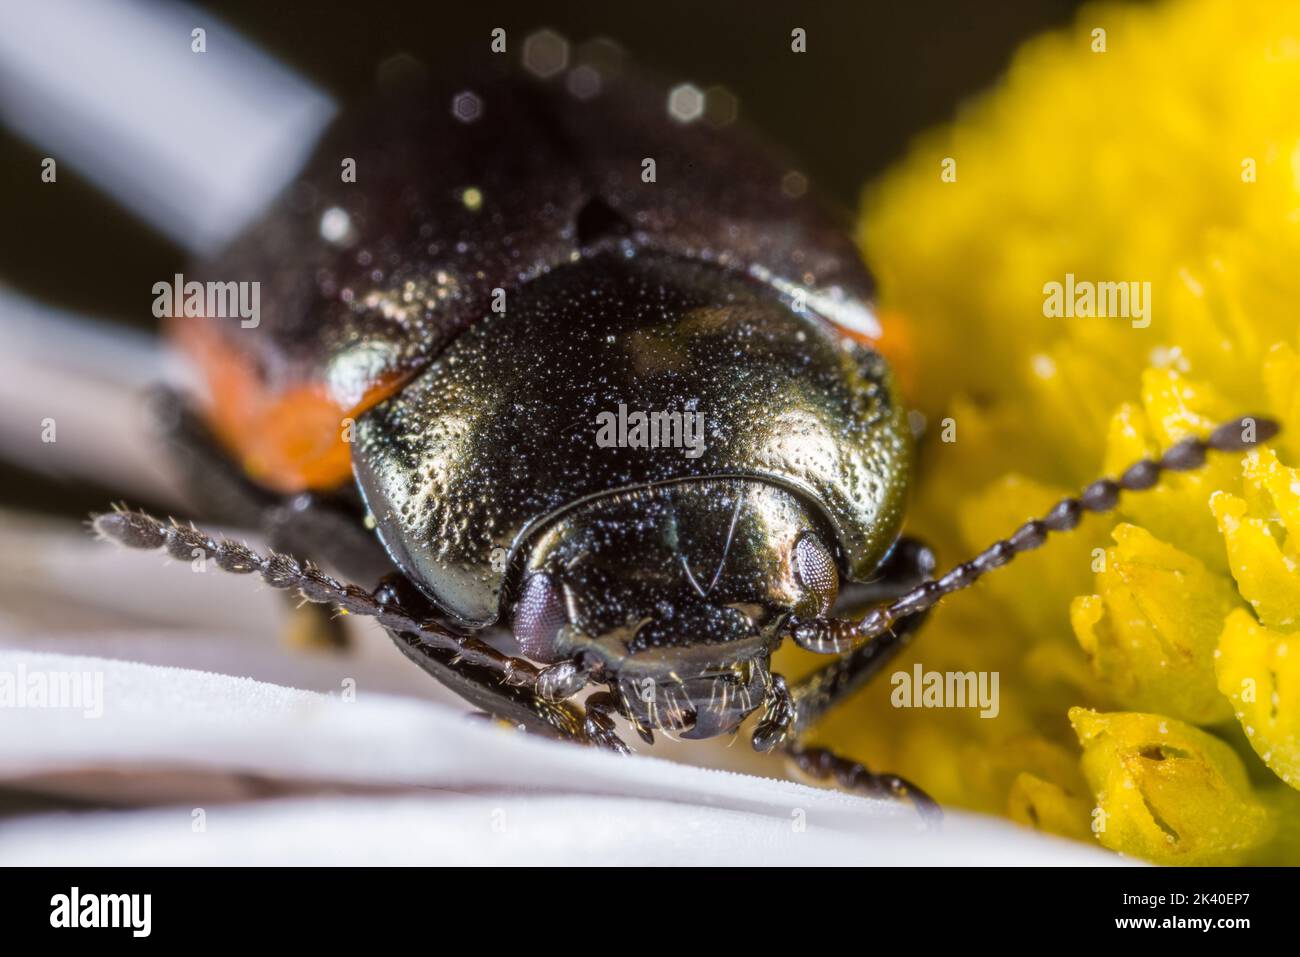 El escarabajo de hoja (Chrysolina marginata), se asienta sobre una flor, retrato, Alemania Foto de stock